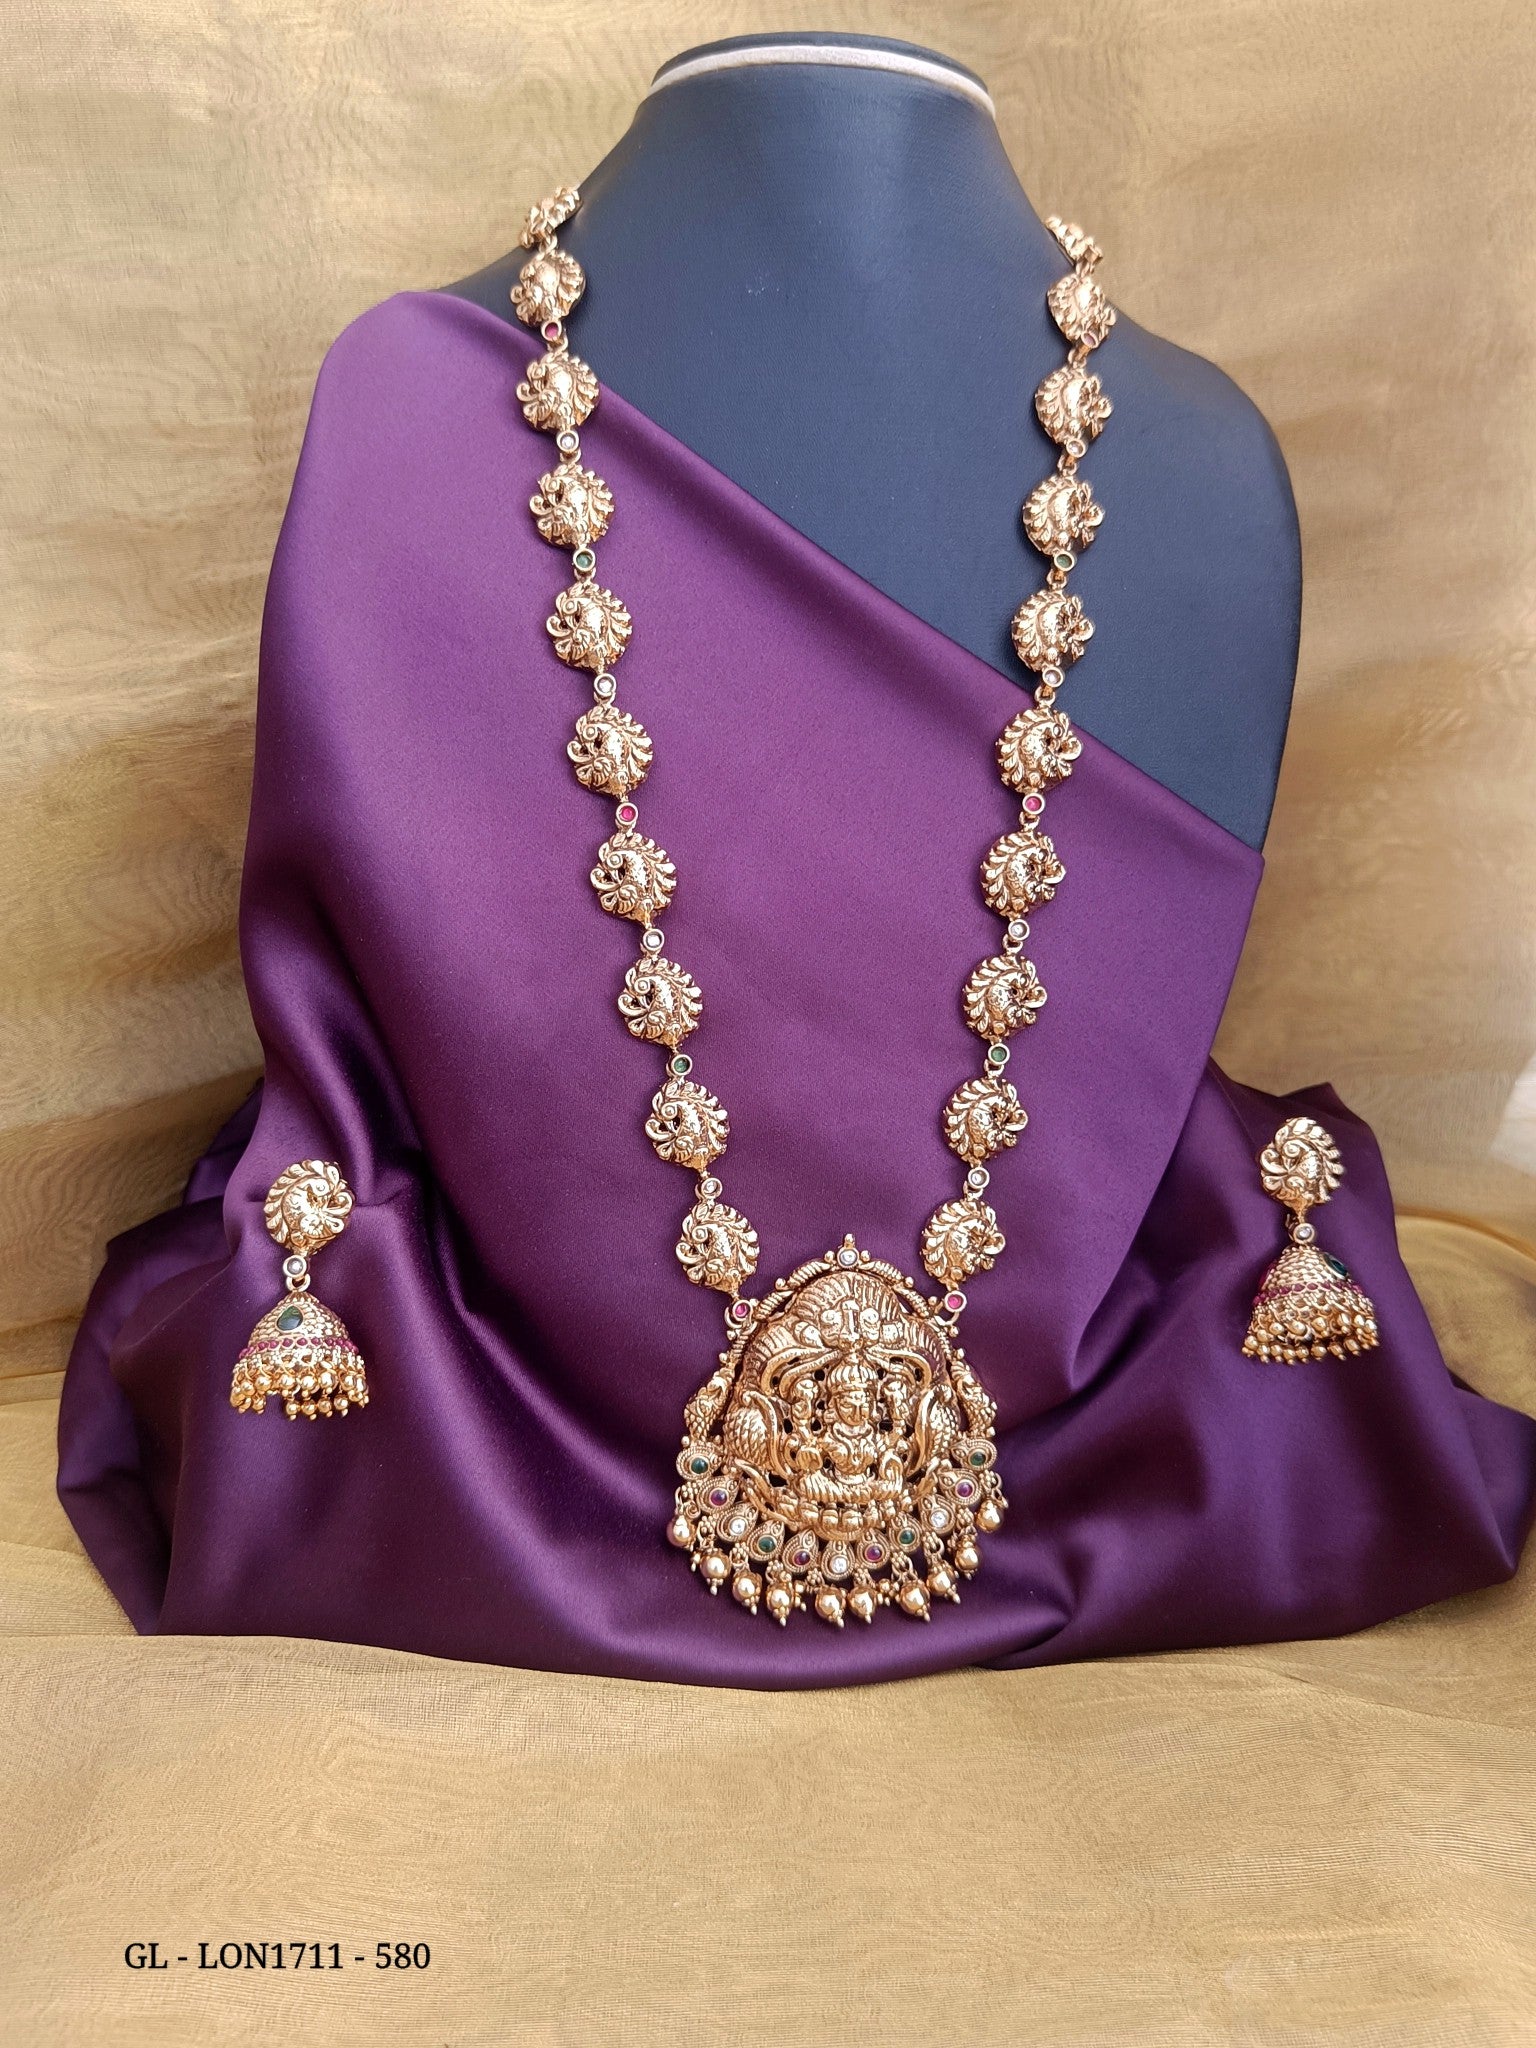 Premium Quality Lakshmi design Ruby Stone Necklace GL-LON1711-580